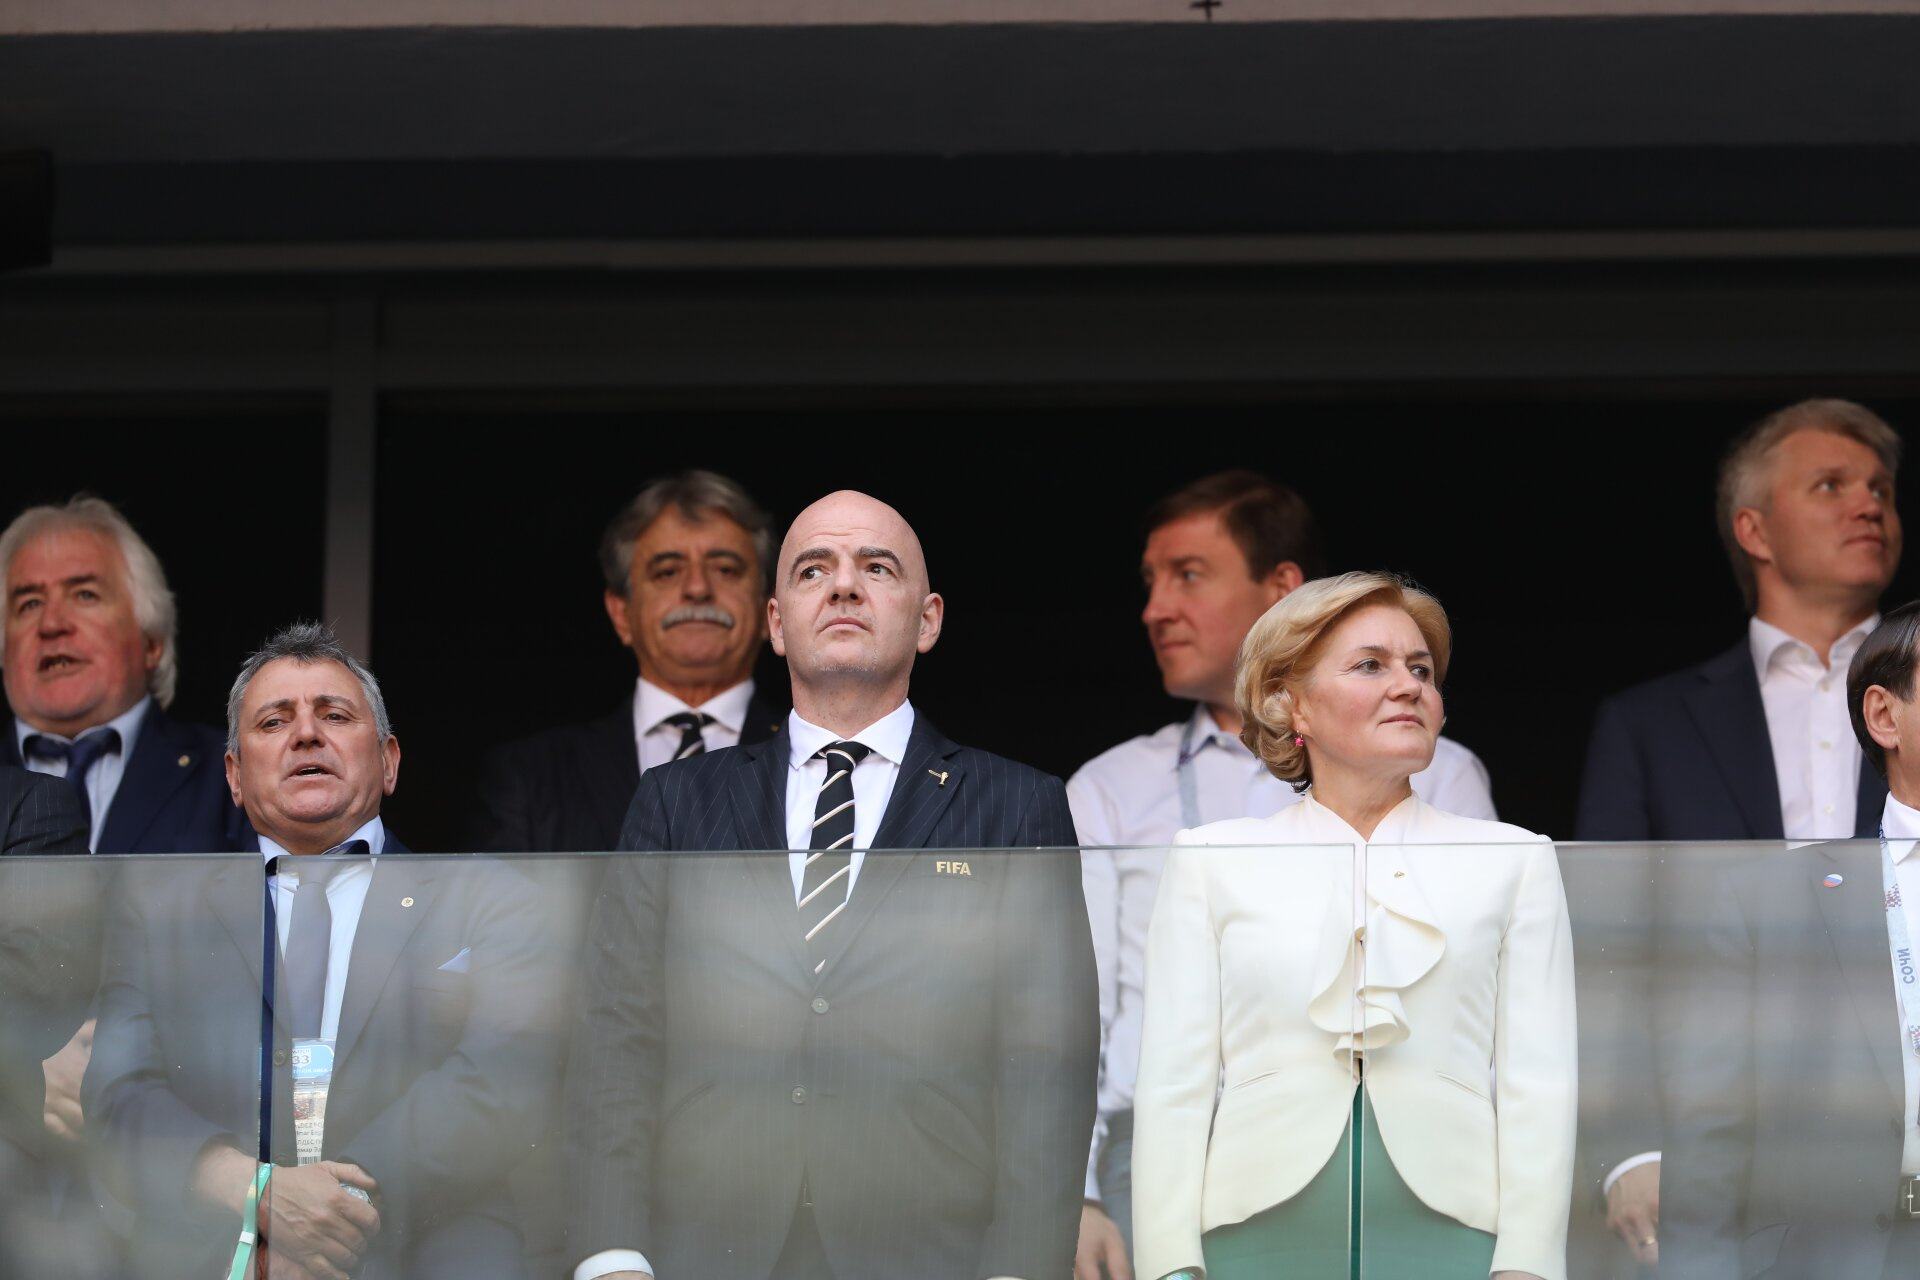 В центре — президент FIFA Джанни Инфантино